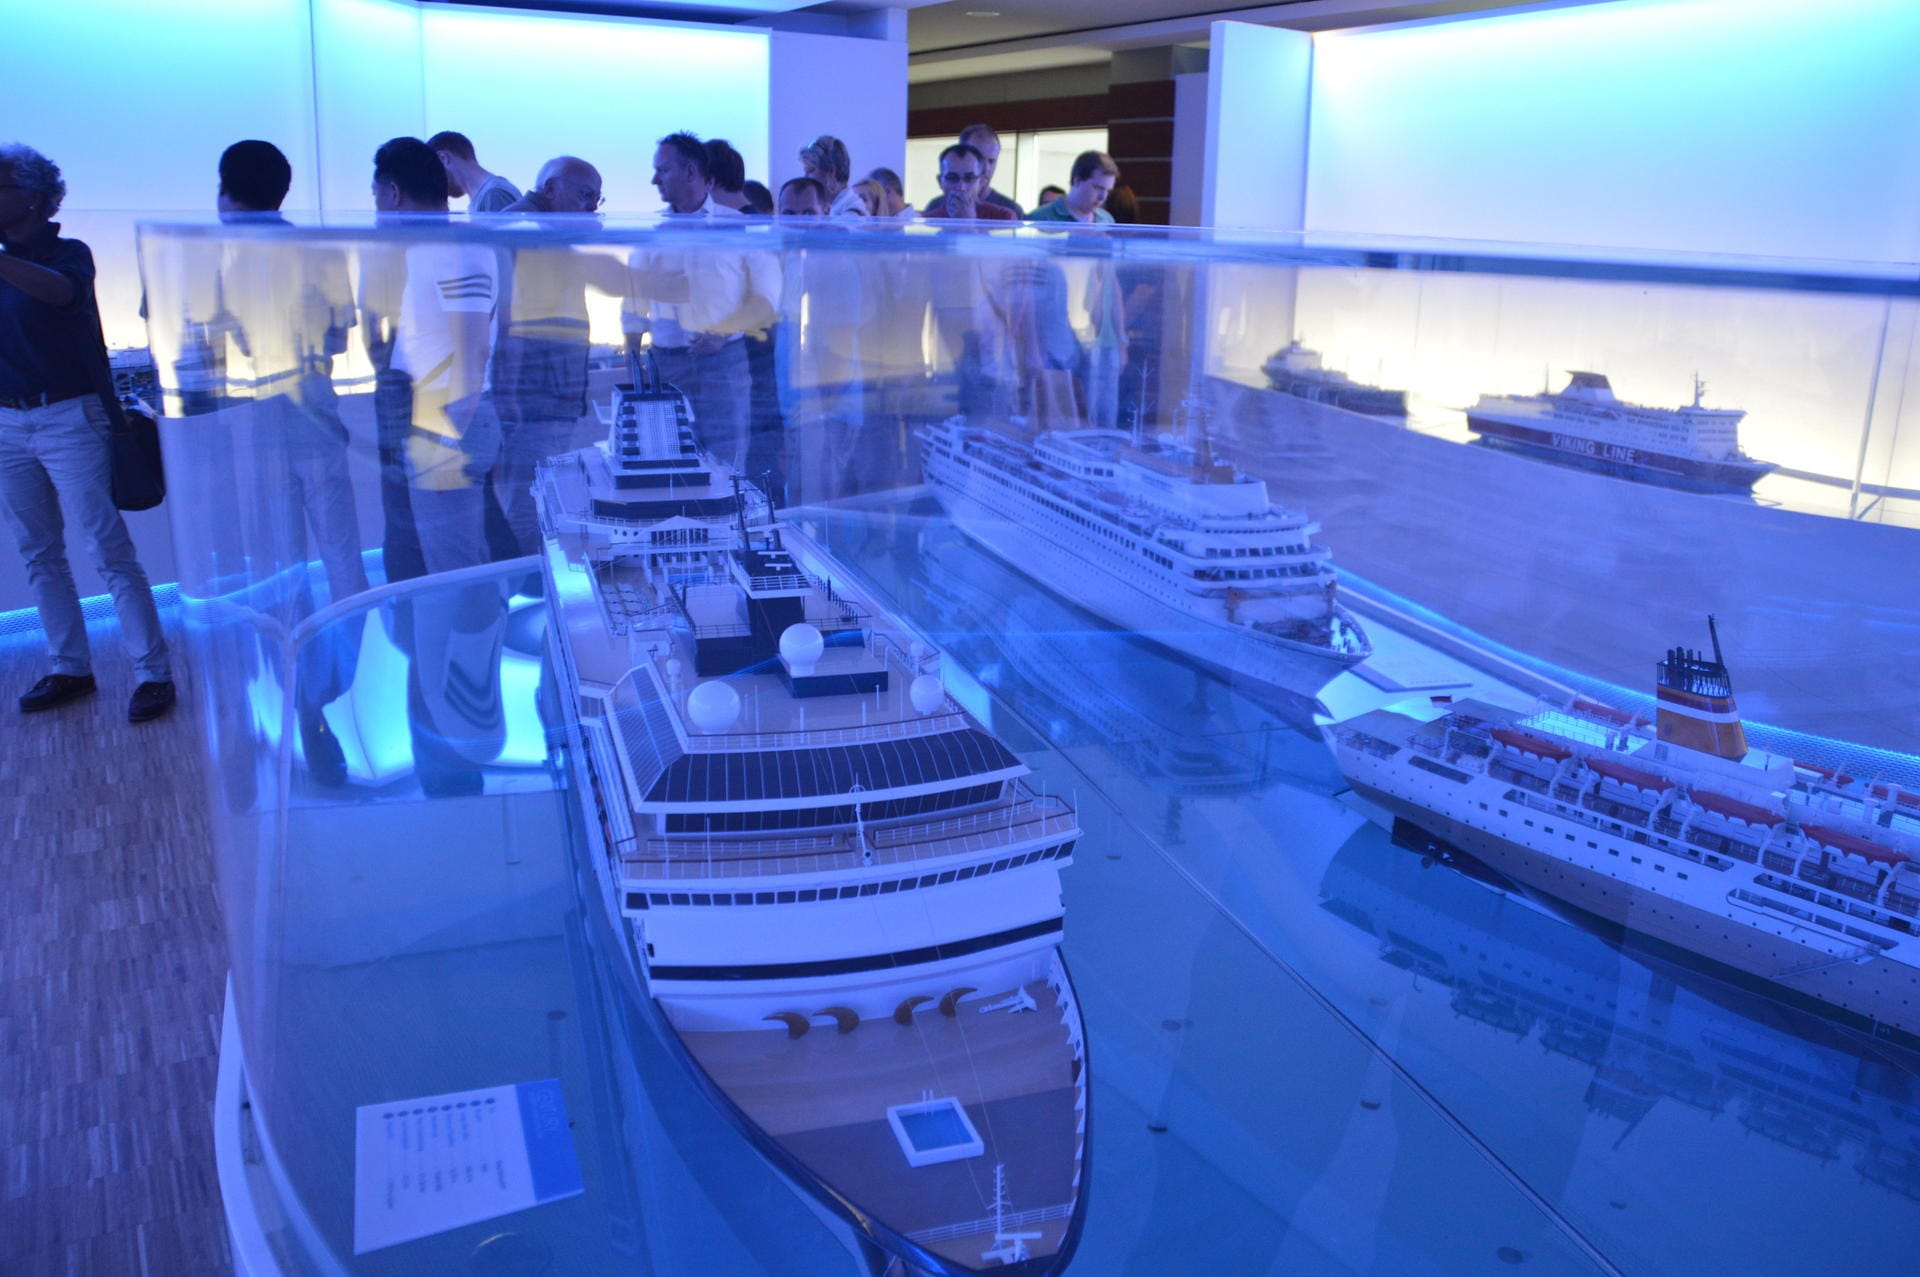 Schiffsmodelle im Besucherzentrum der Meyer Werft. Besucherzentrum der Meyer Werft.